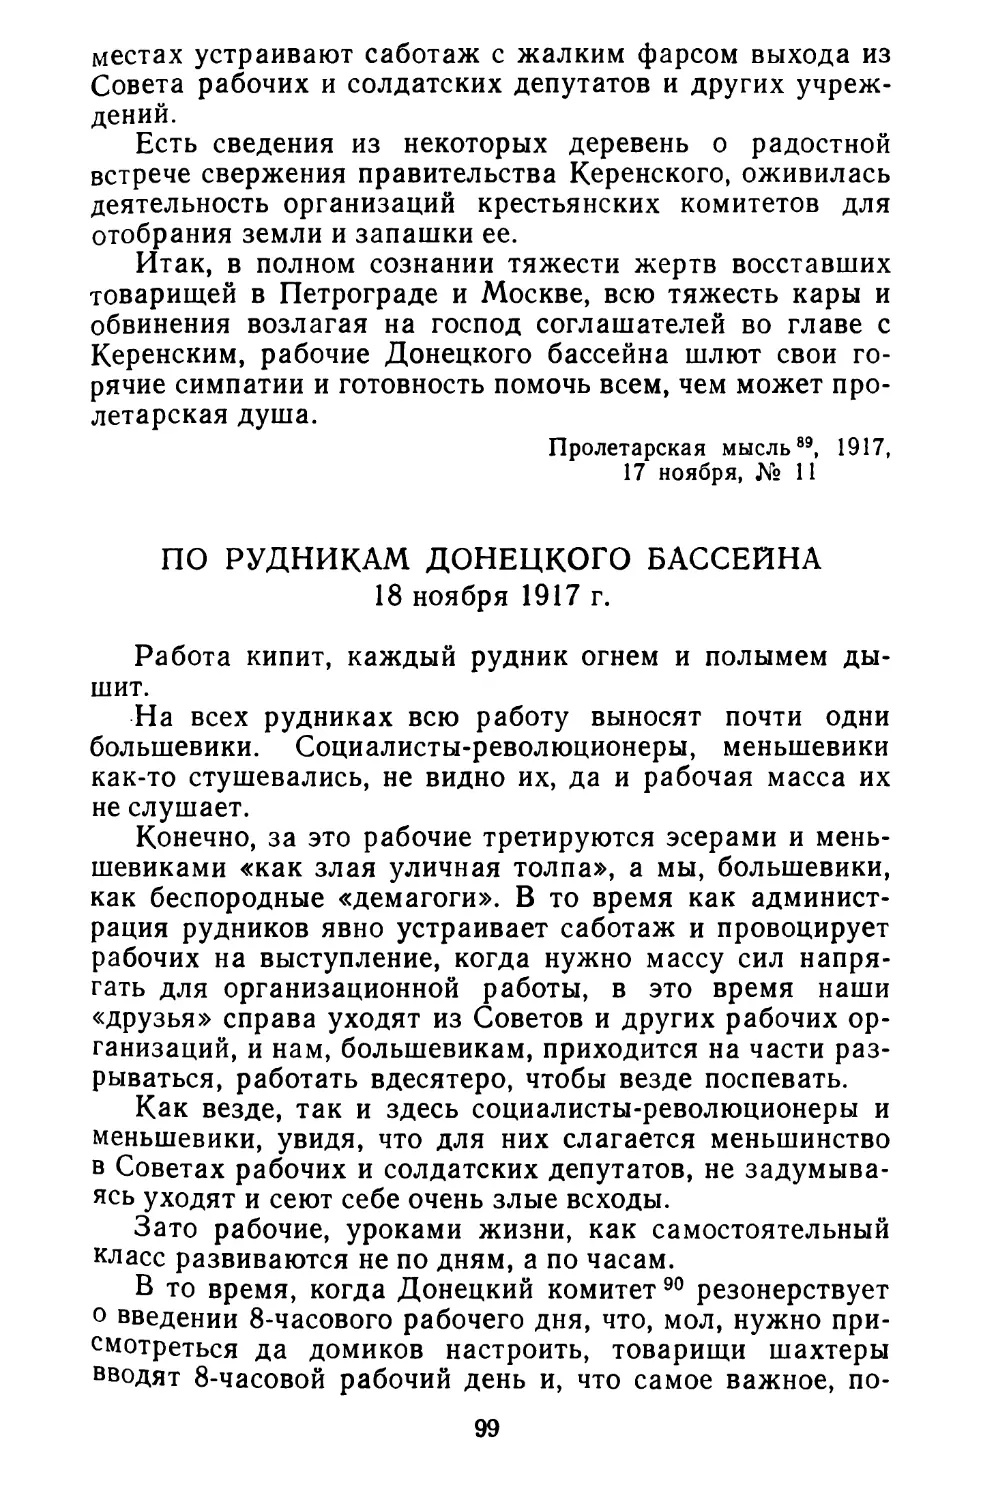 По рудникам Донецкого бассейна. 18 ноября 1917 г.